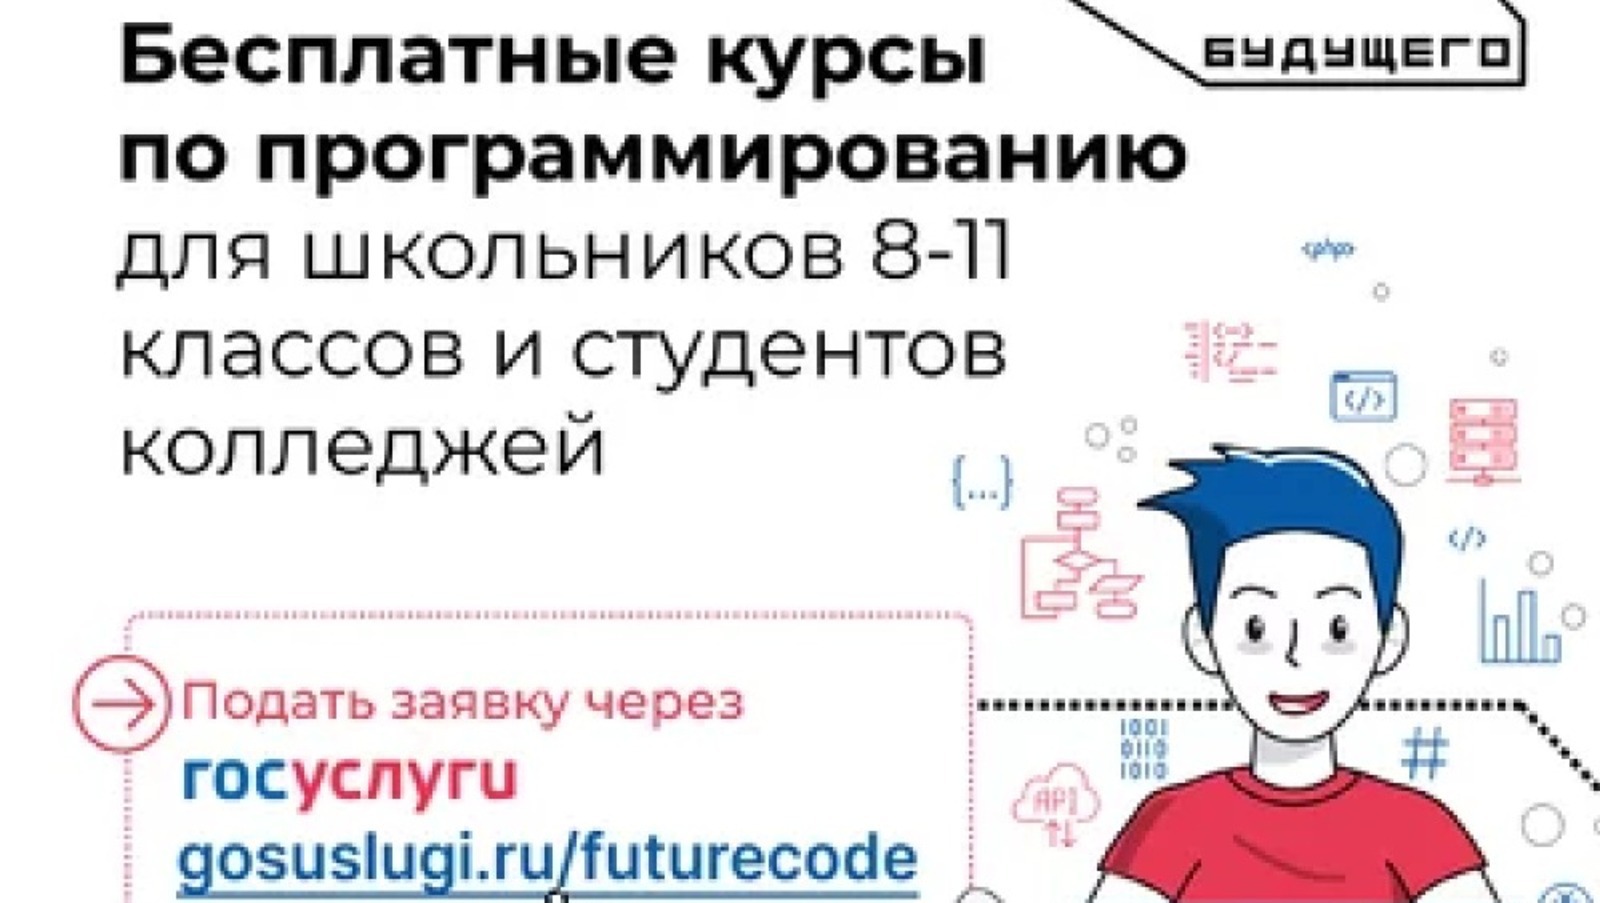 Школьники и студенты Башкирии смогут пройти бесплатные курсы по программированию